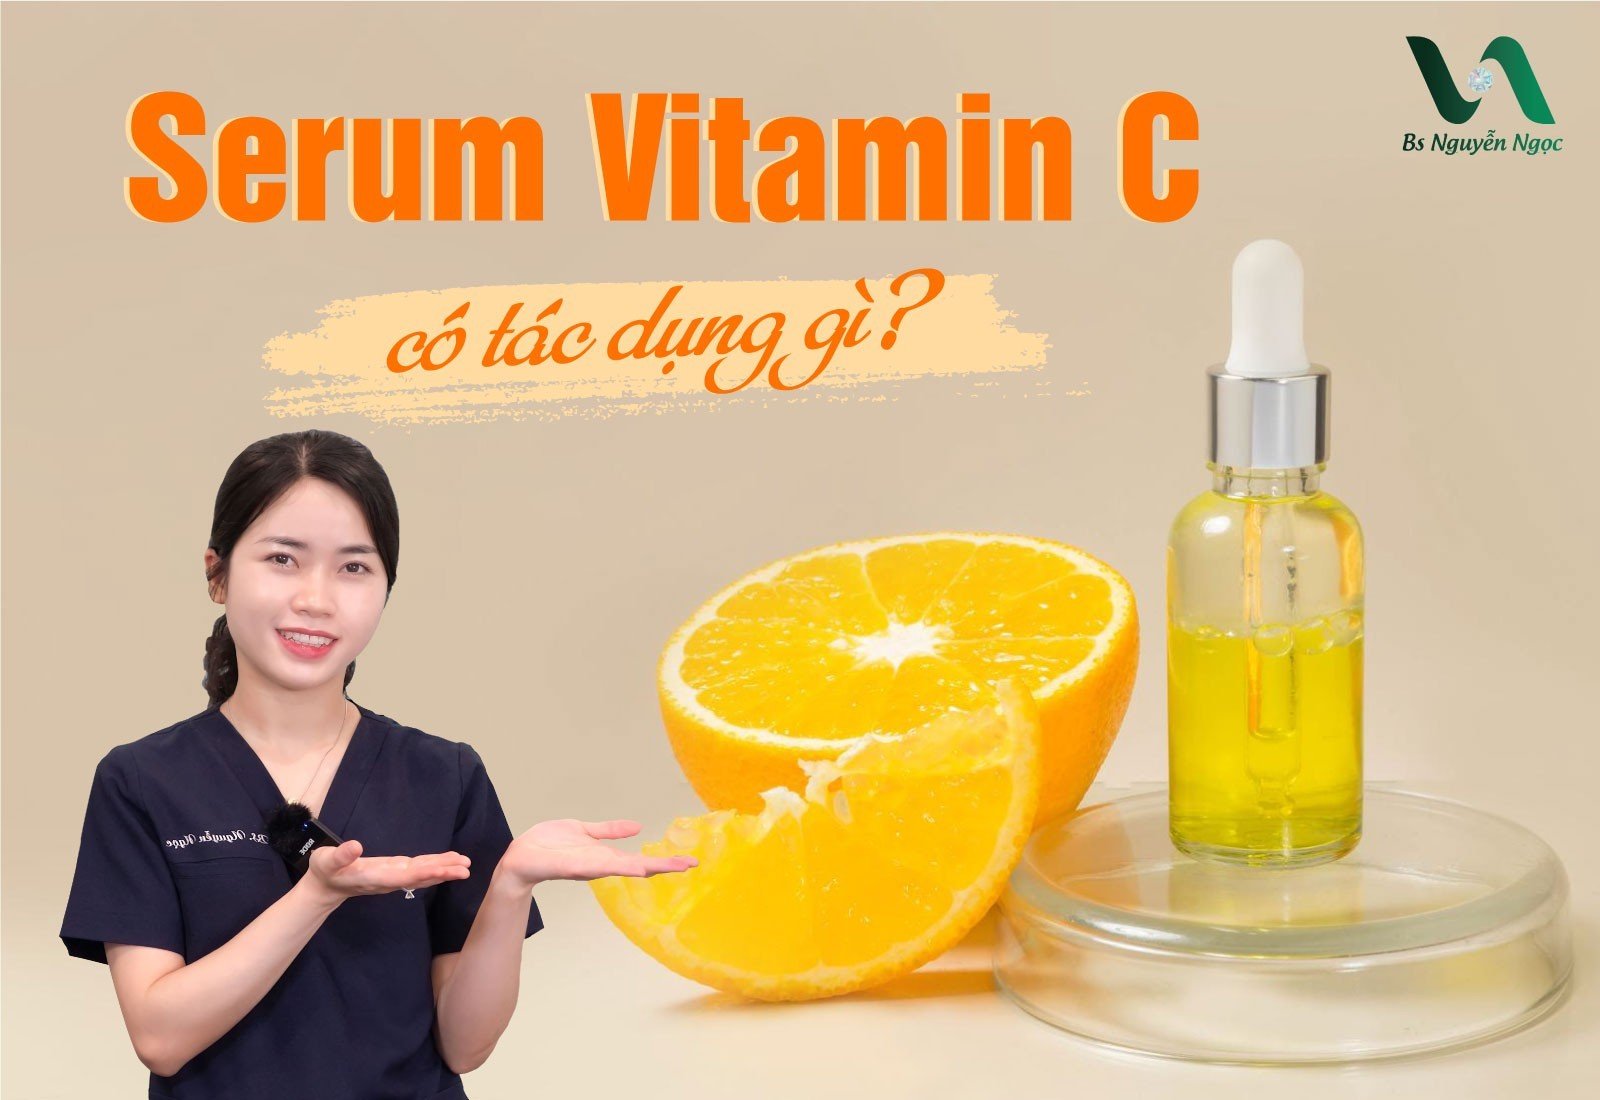 Serum Vitamin C có tác dụng gì?